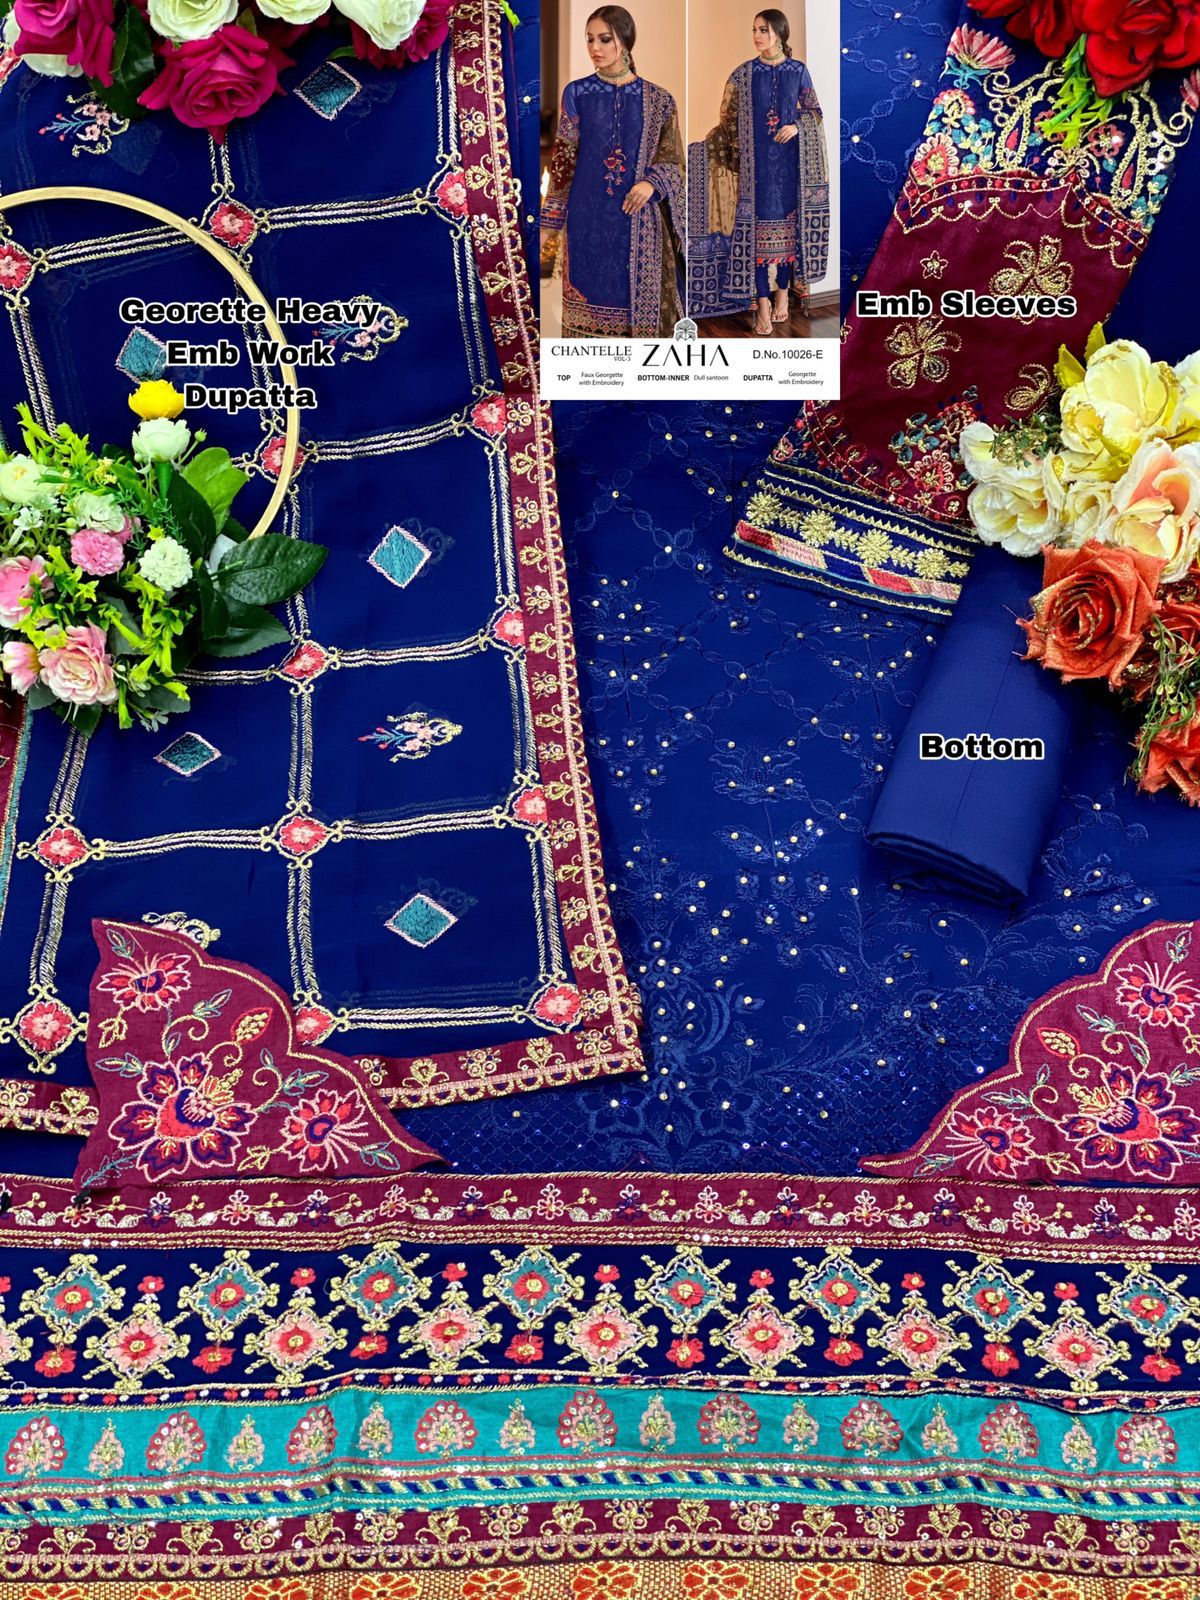 zaha chanterelle vol 3 colours georgette decent look salwar suit catalog